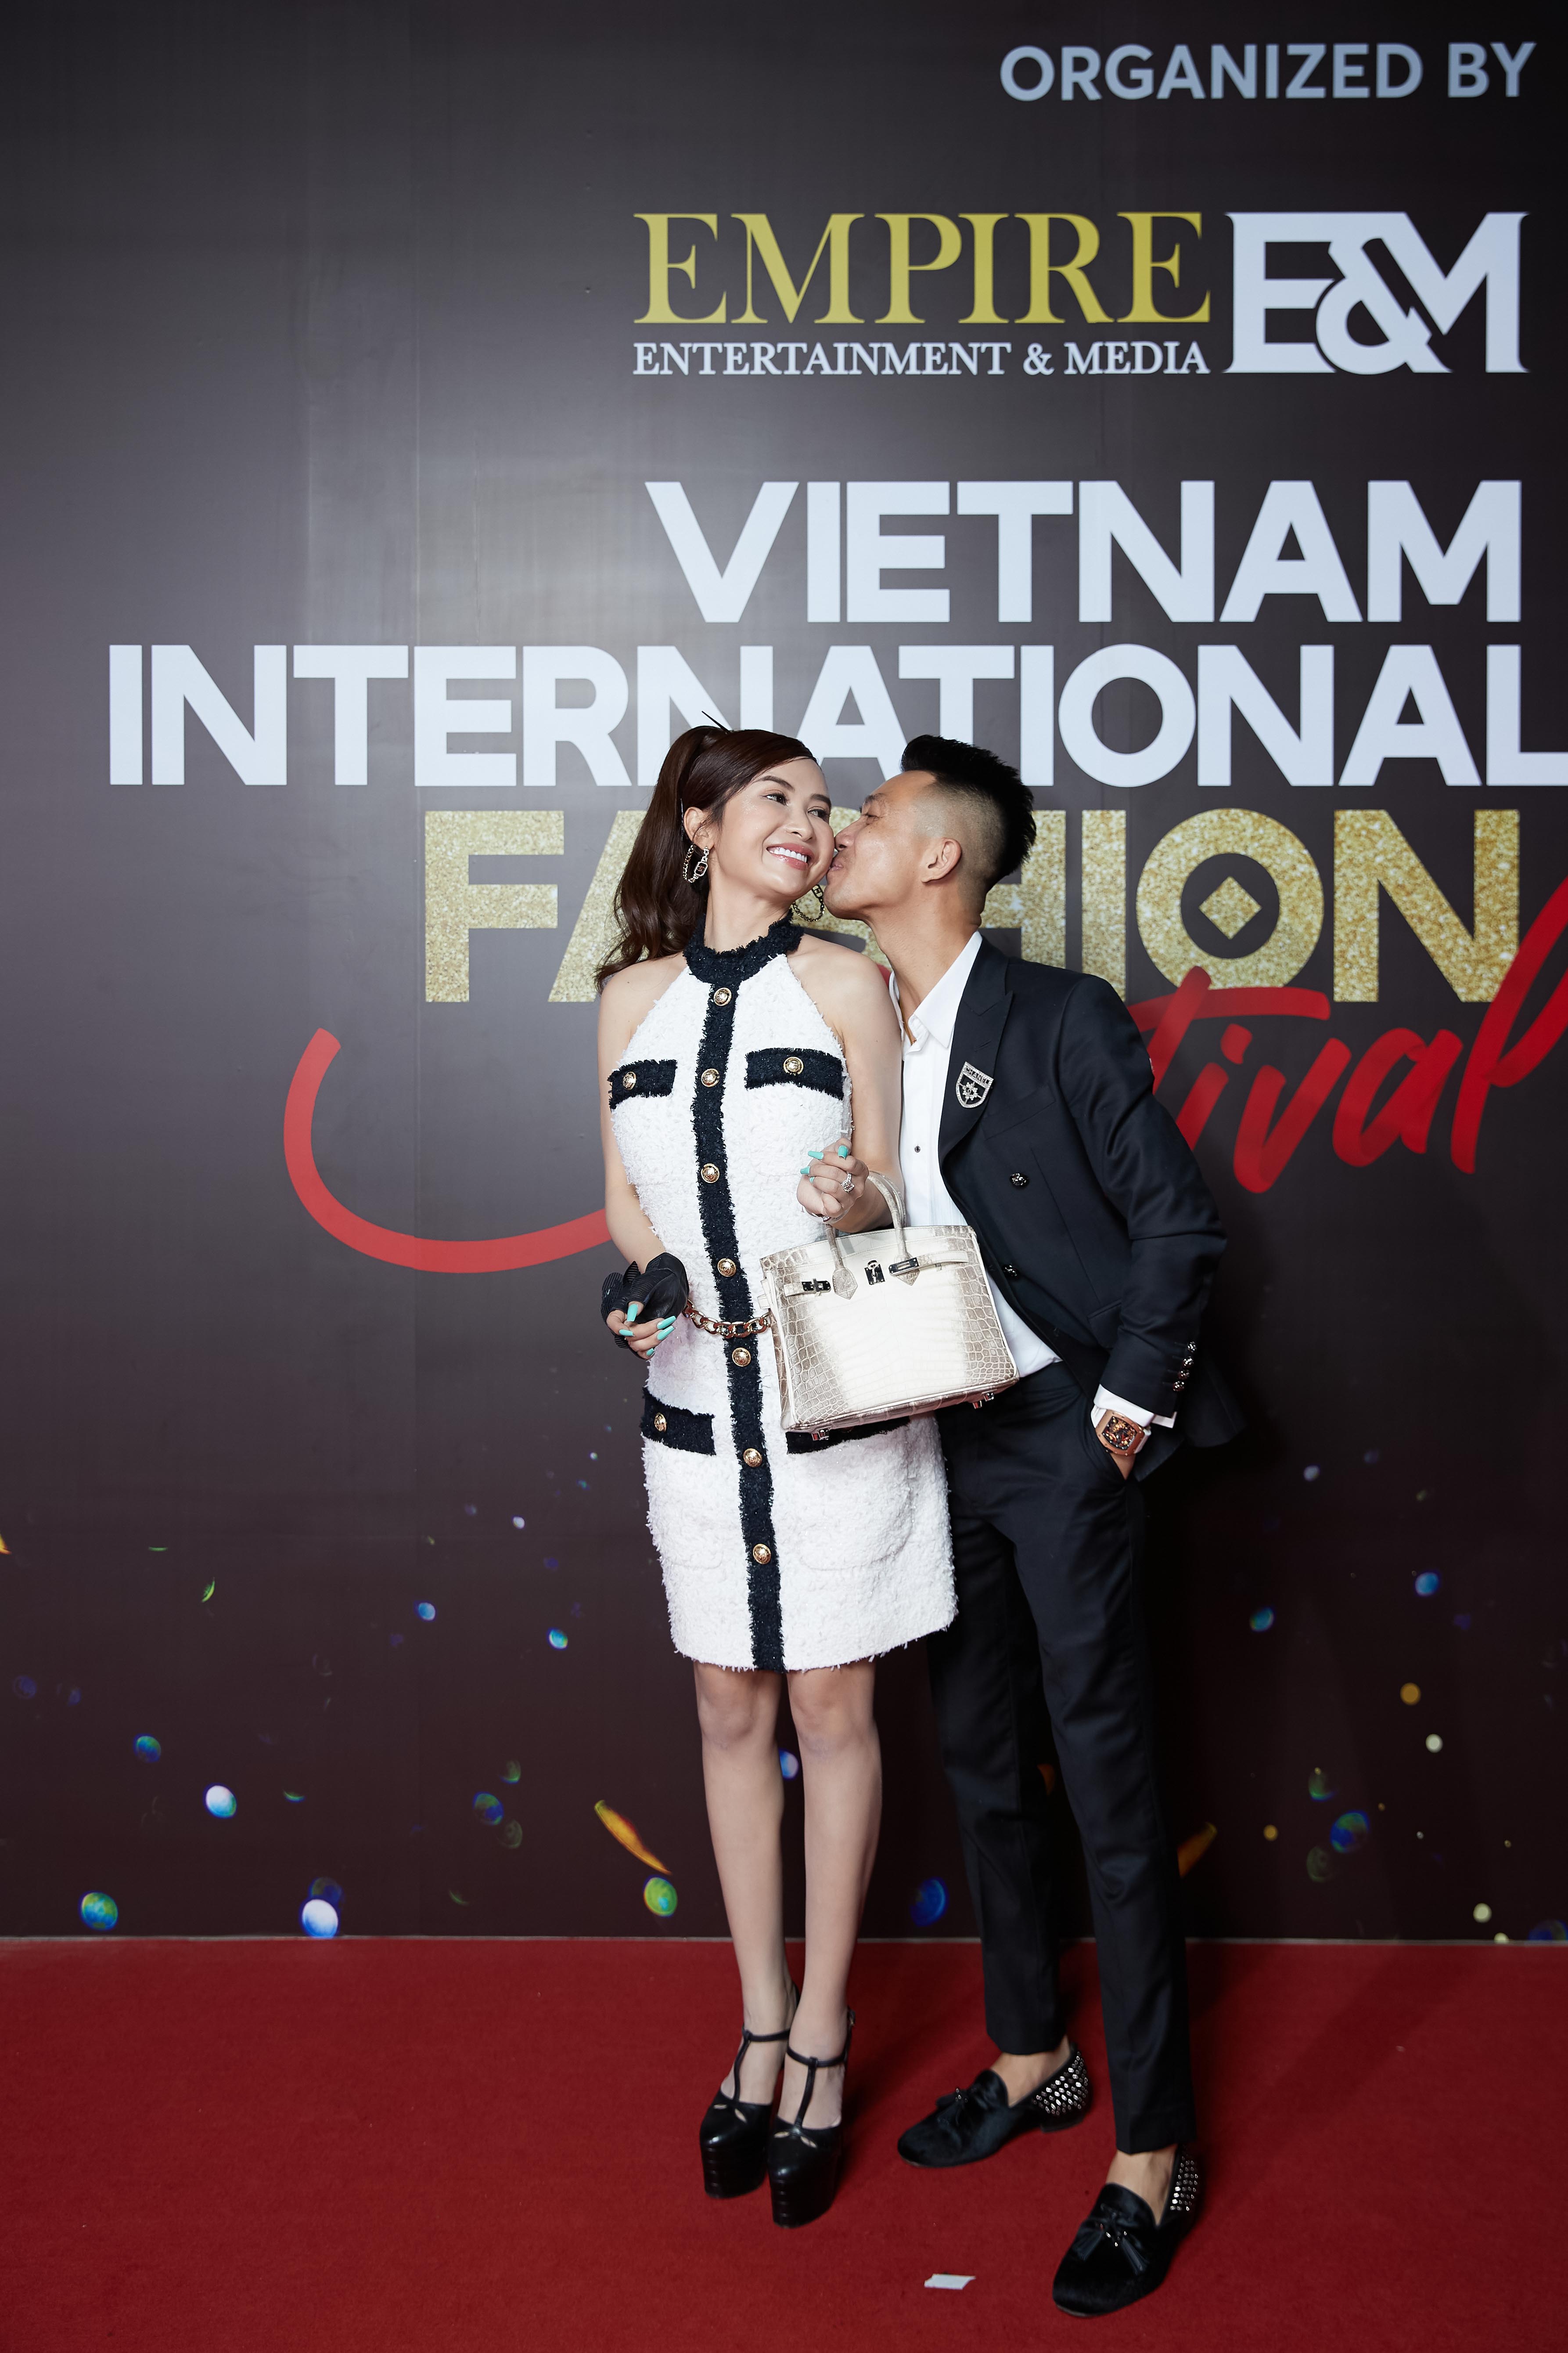 Đại gia Minh Nhựa đi cùng vợ mình là Mina Phạm đến xem thời trang. Anh có khoảnh khắc khiến nhiều người thích thú khi hôn má vợ mình trên thảm đỏ.